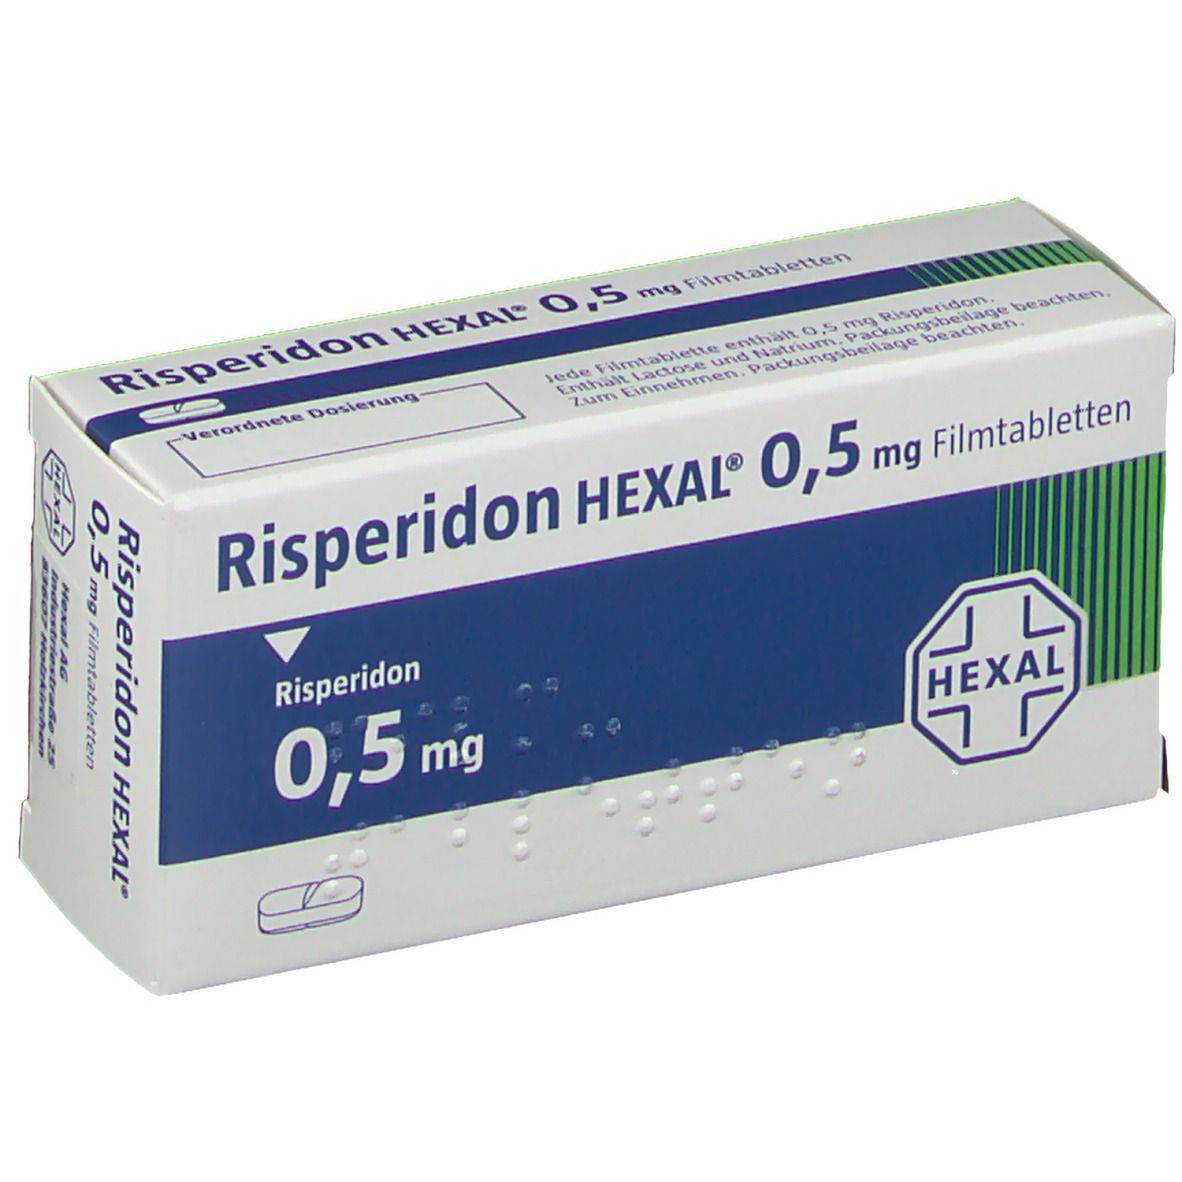 Risperidon HEXAL® 0,5 mg